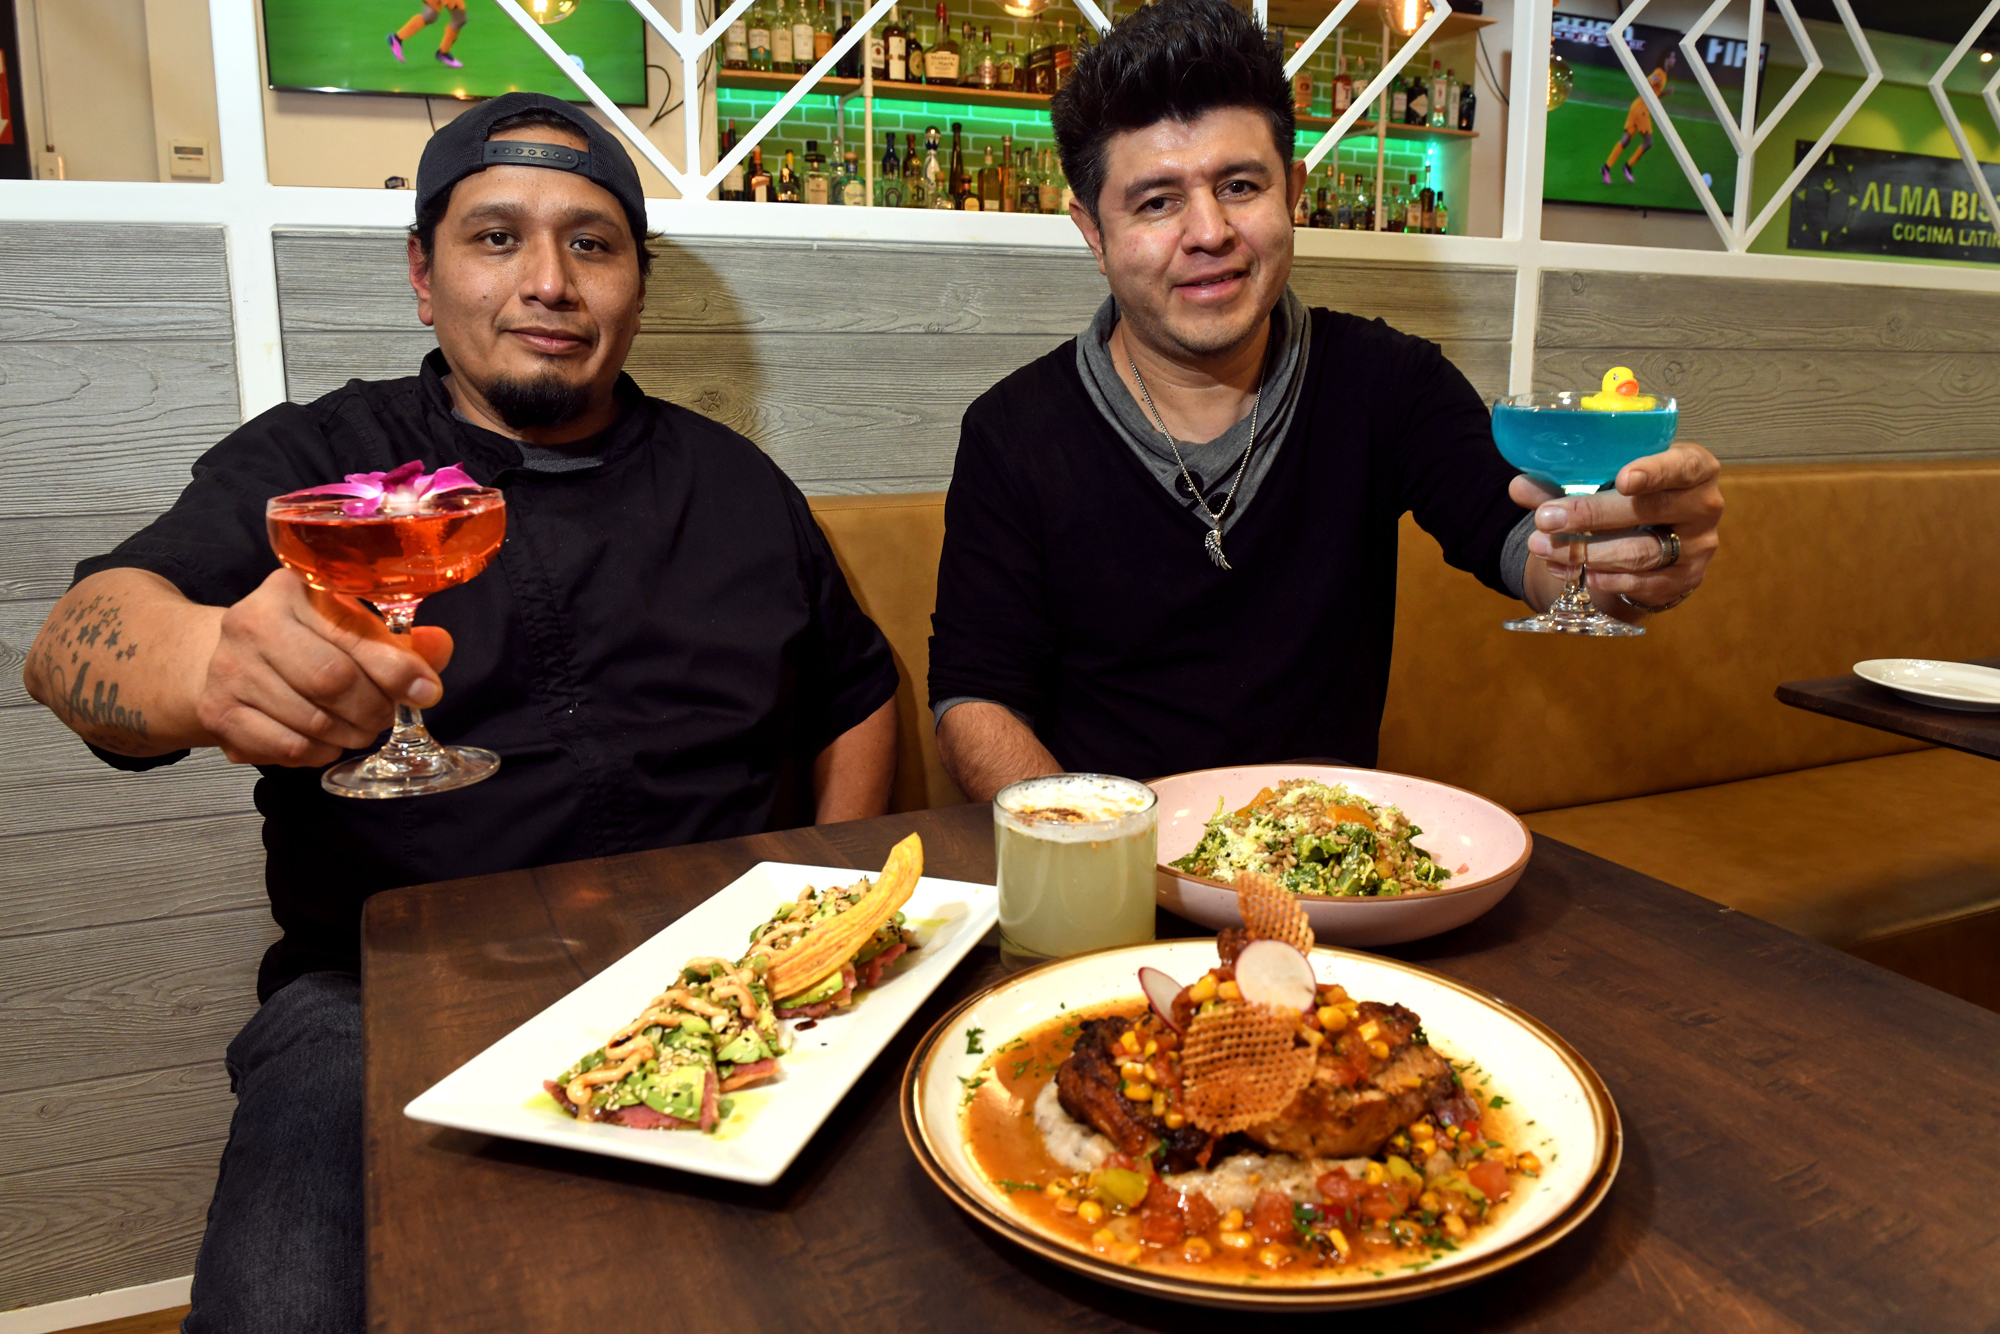 Alma Bistro, a Nuevo-Latino restaurant, in Norwalk opens